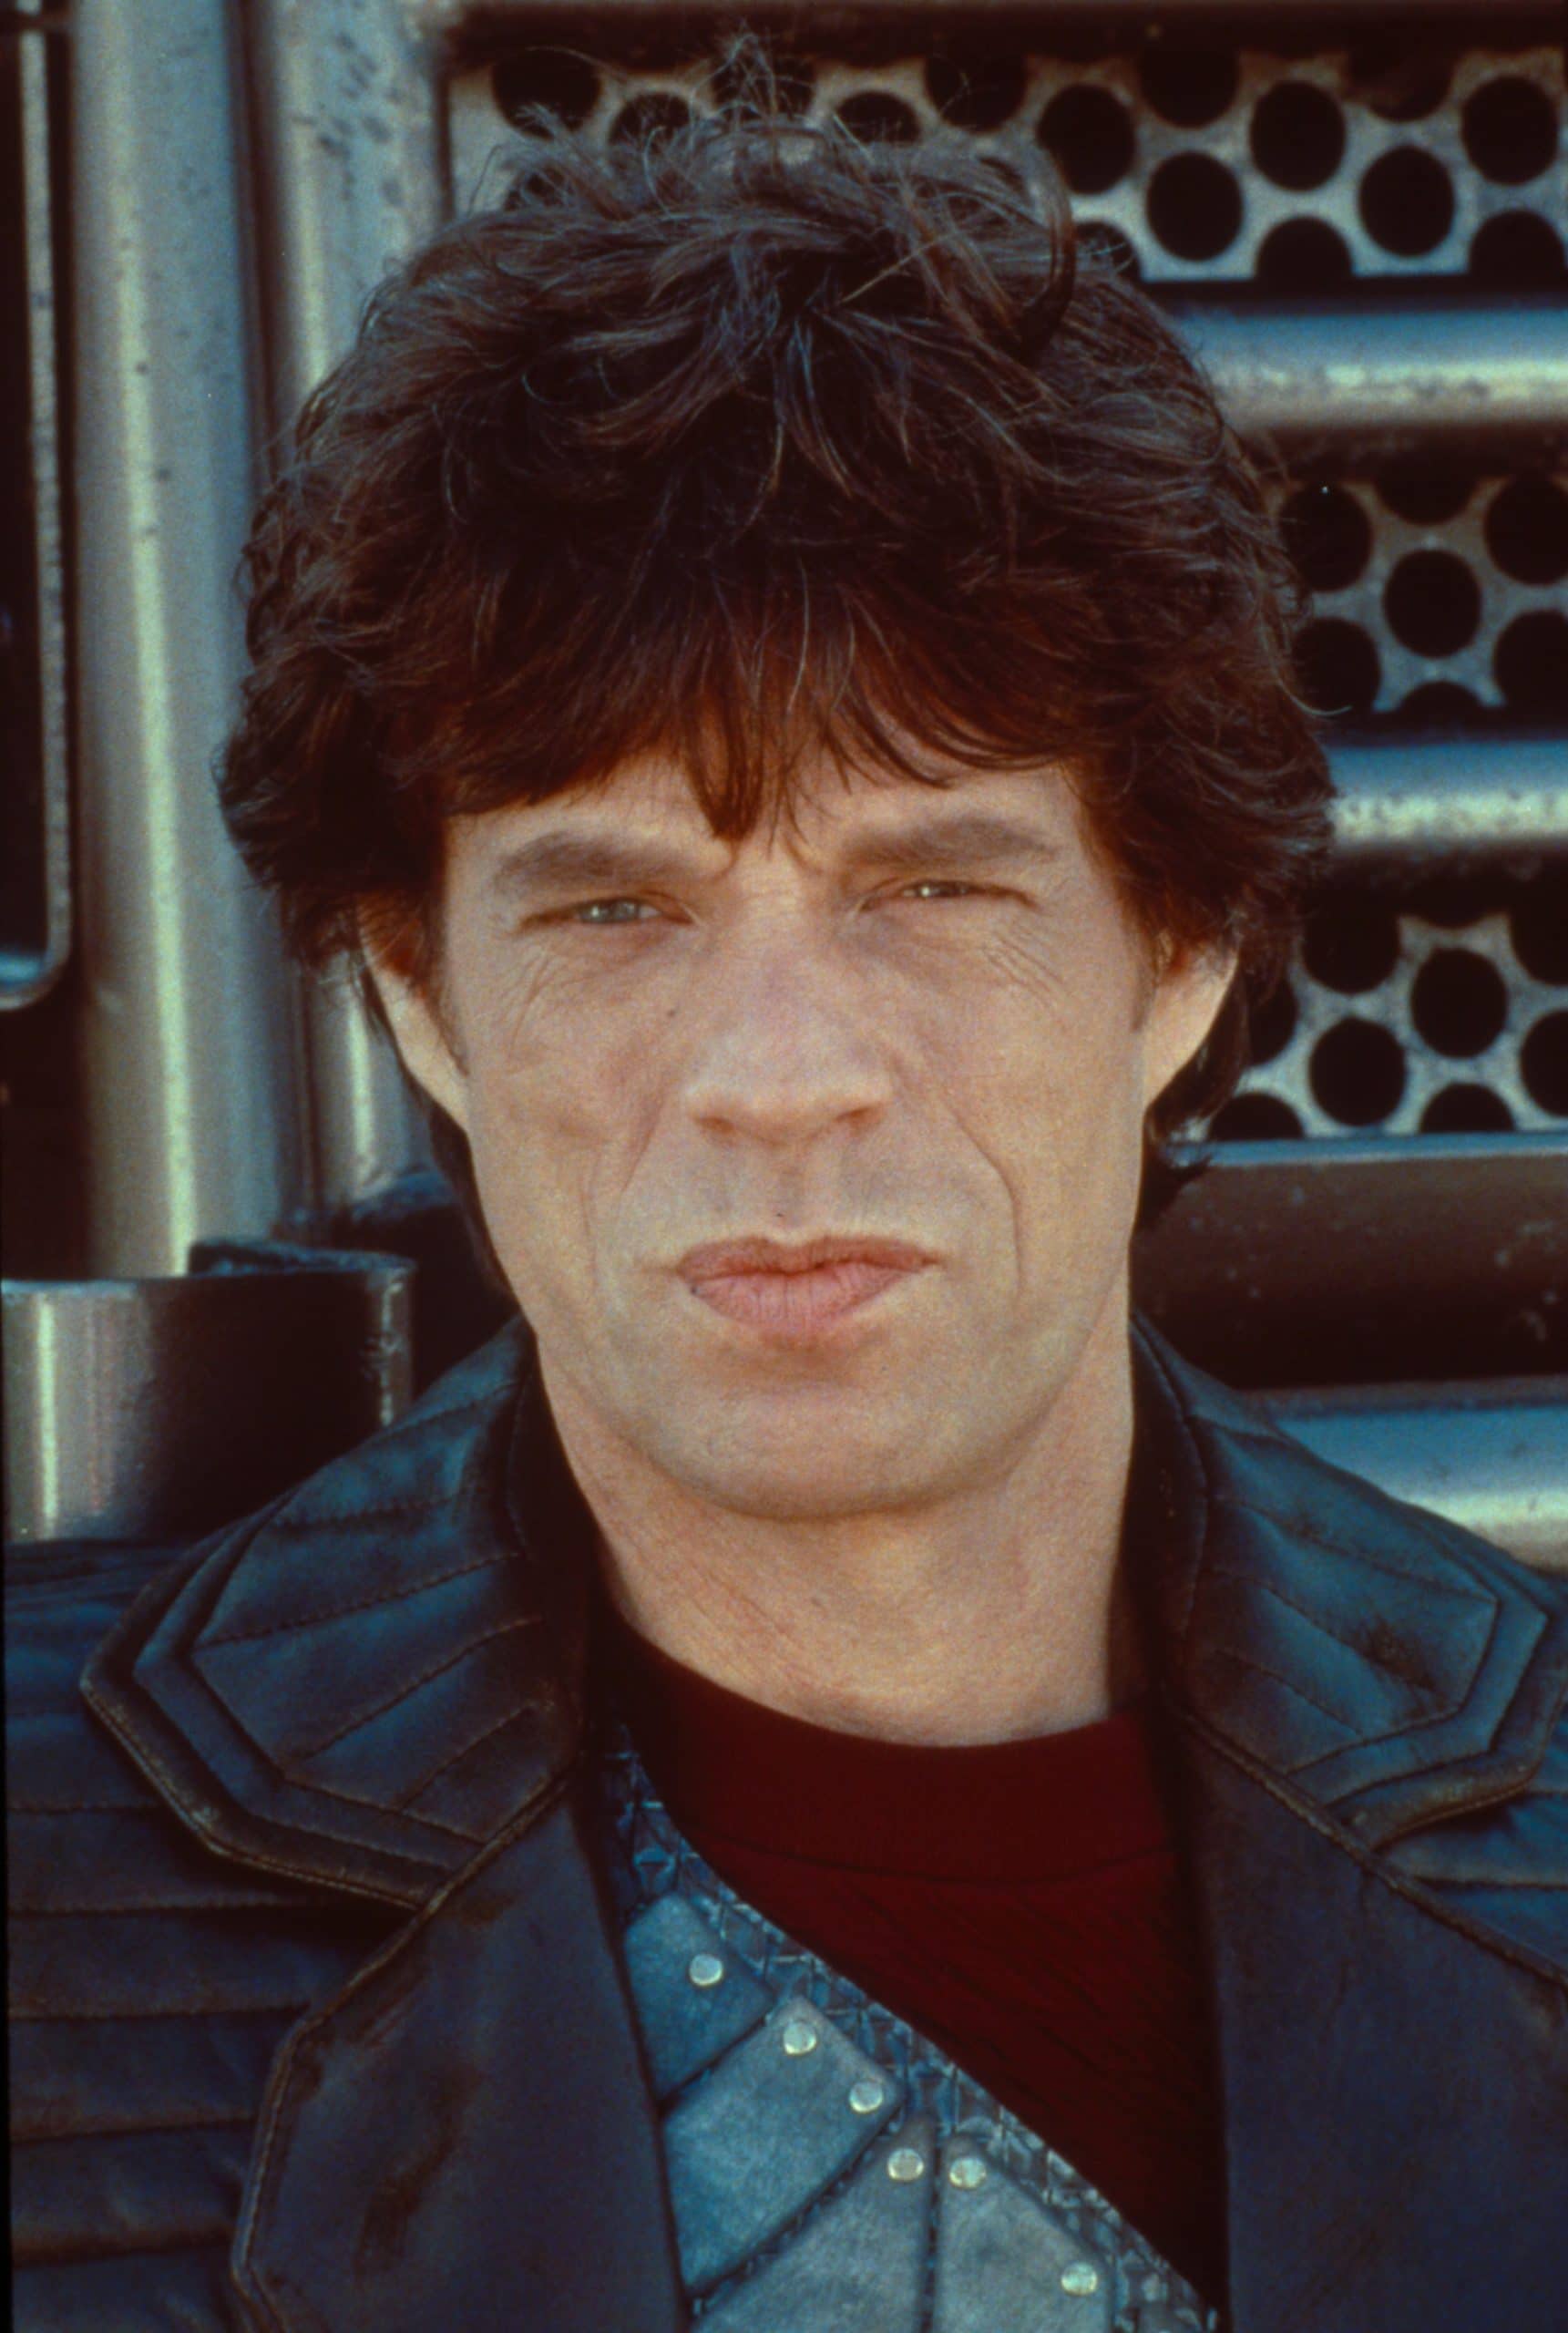 FREEJACK, Mick Jagger, 1992